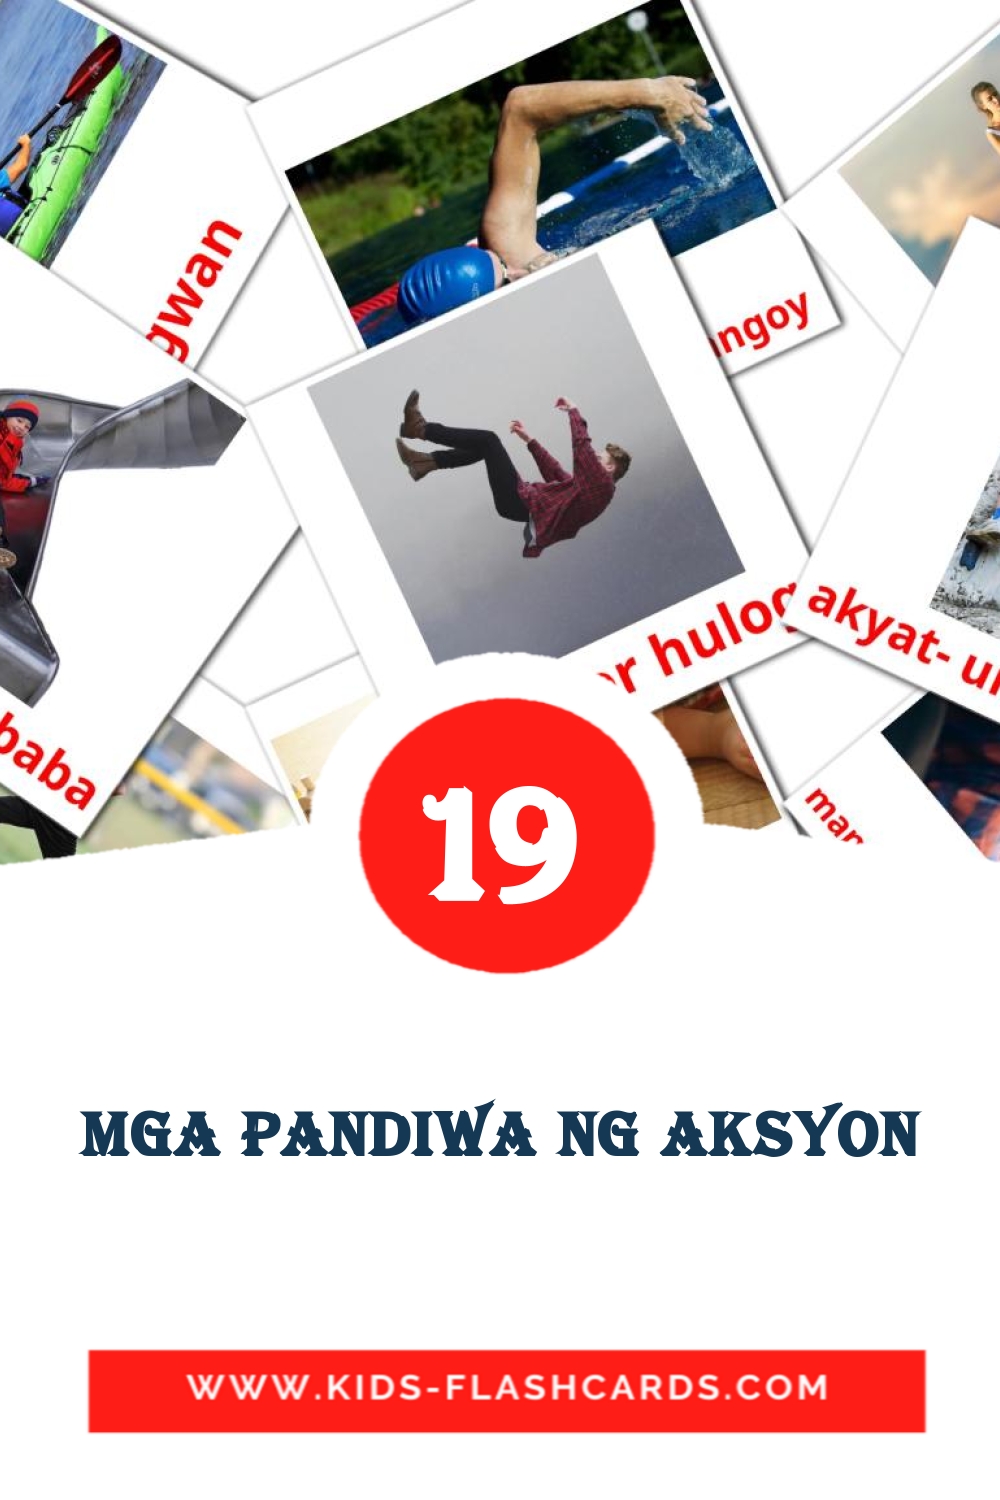 19 carte illustrate di Mga pandiwa ng aksyon per la scuola materna in filippino